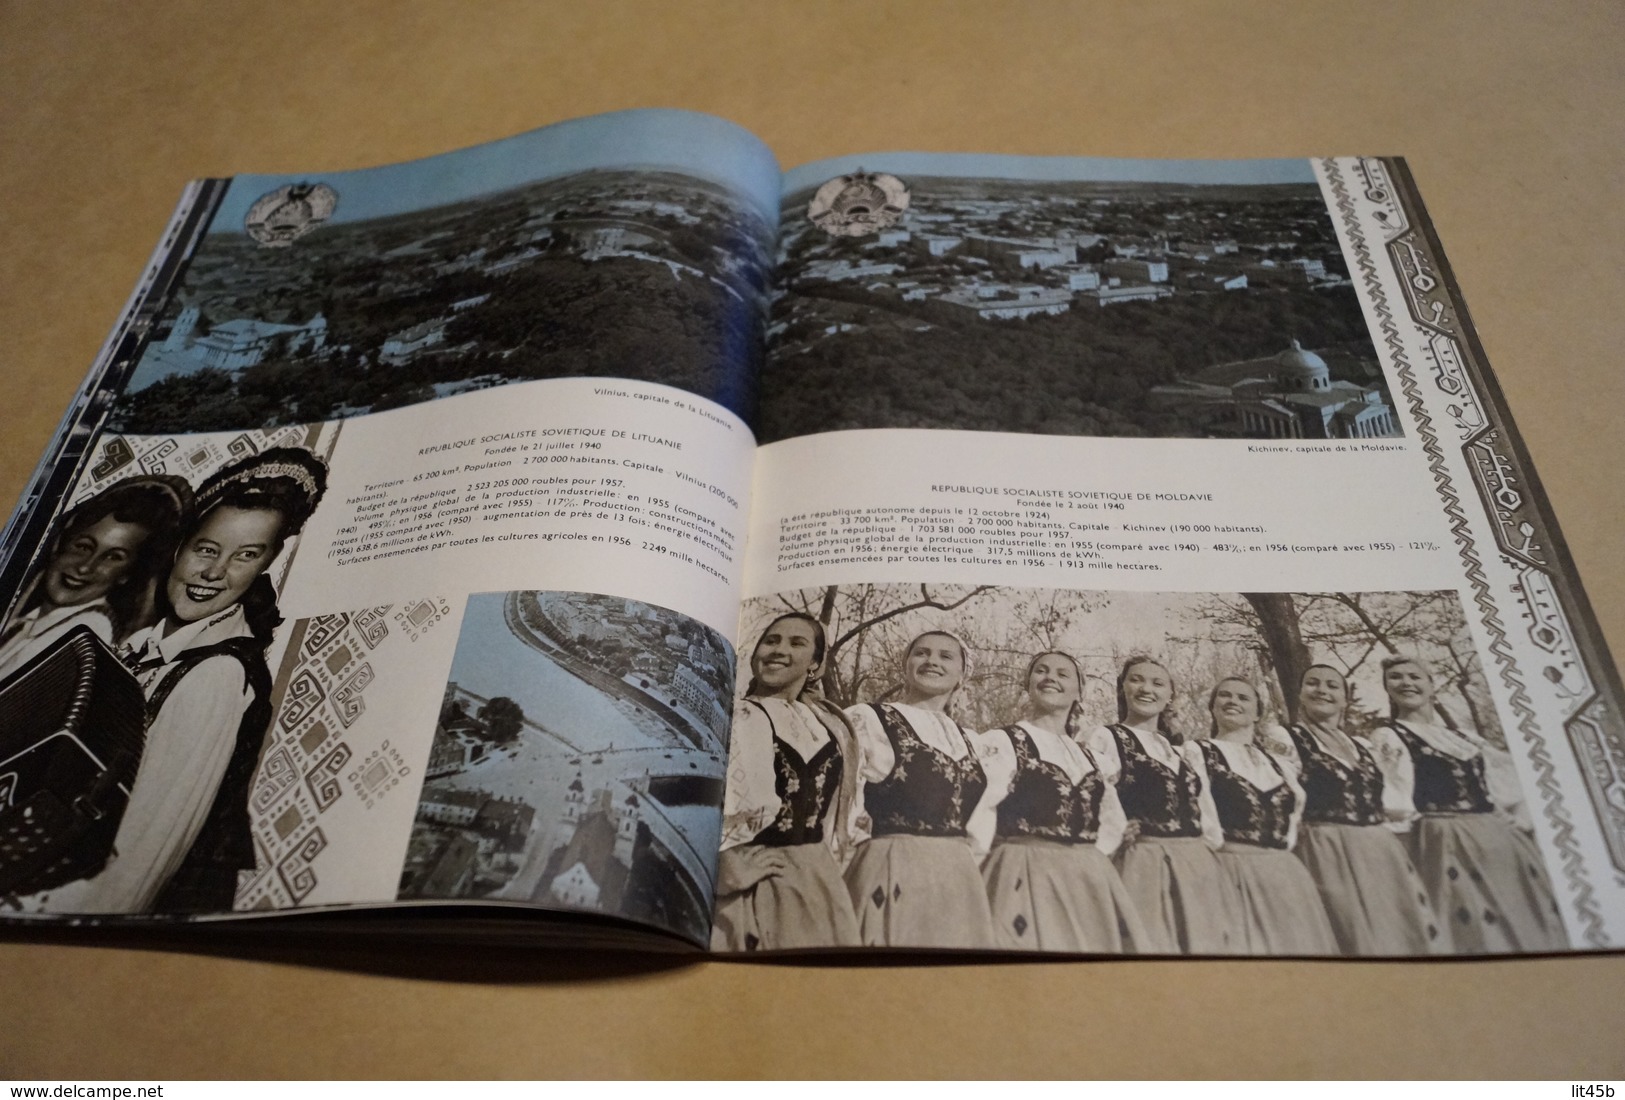 Expo 58,Exposition Bruxelles 1958,grand catalogue,Russie,U.R.S.S.130 pages,26 cm. sur 21 Cm.